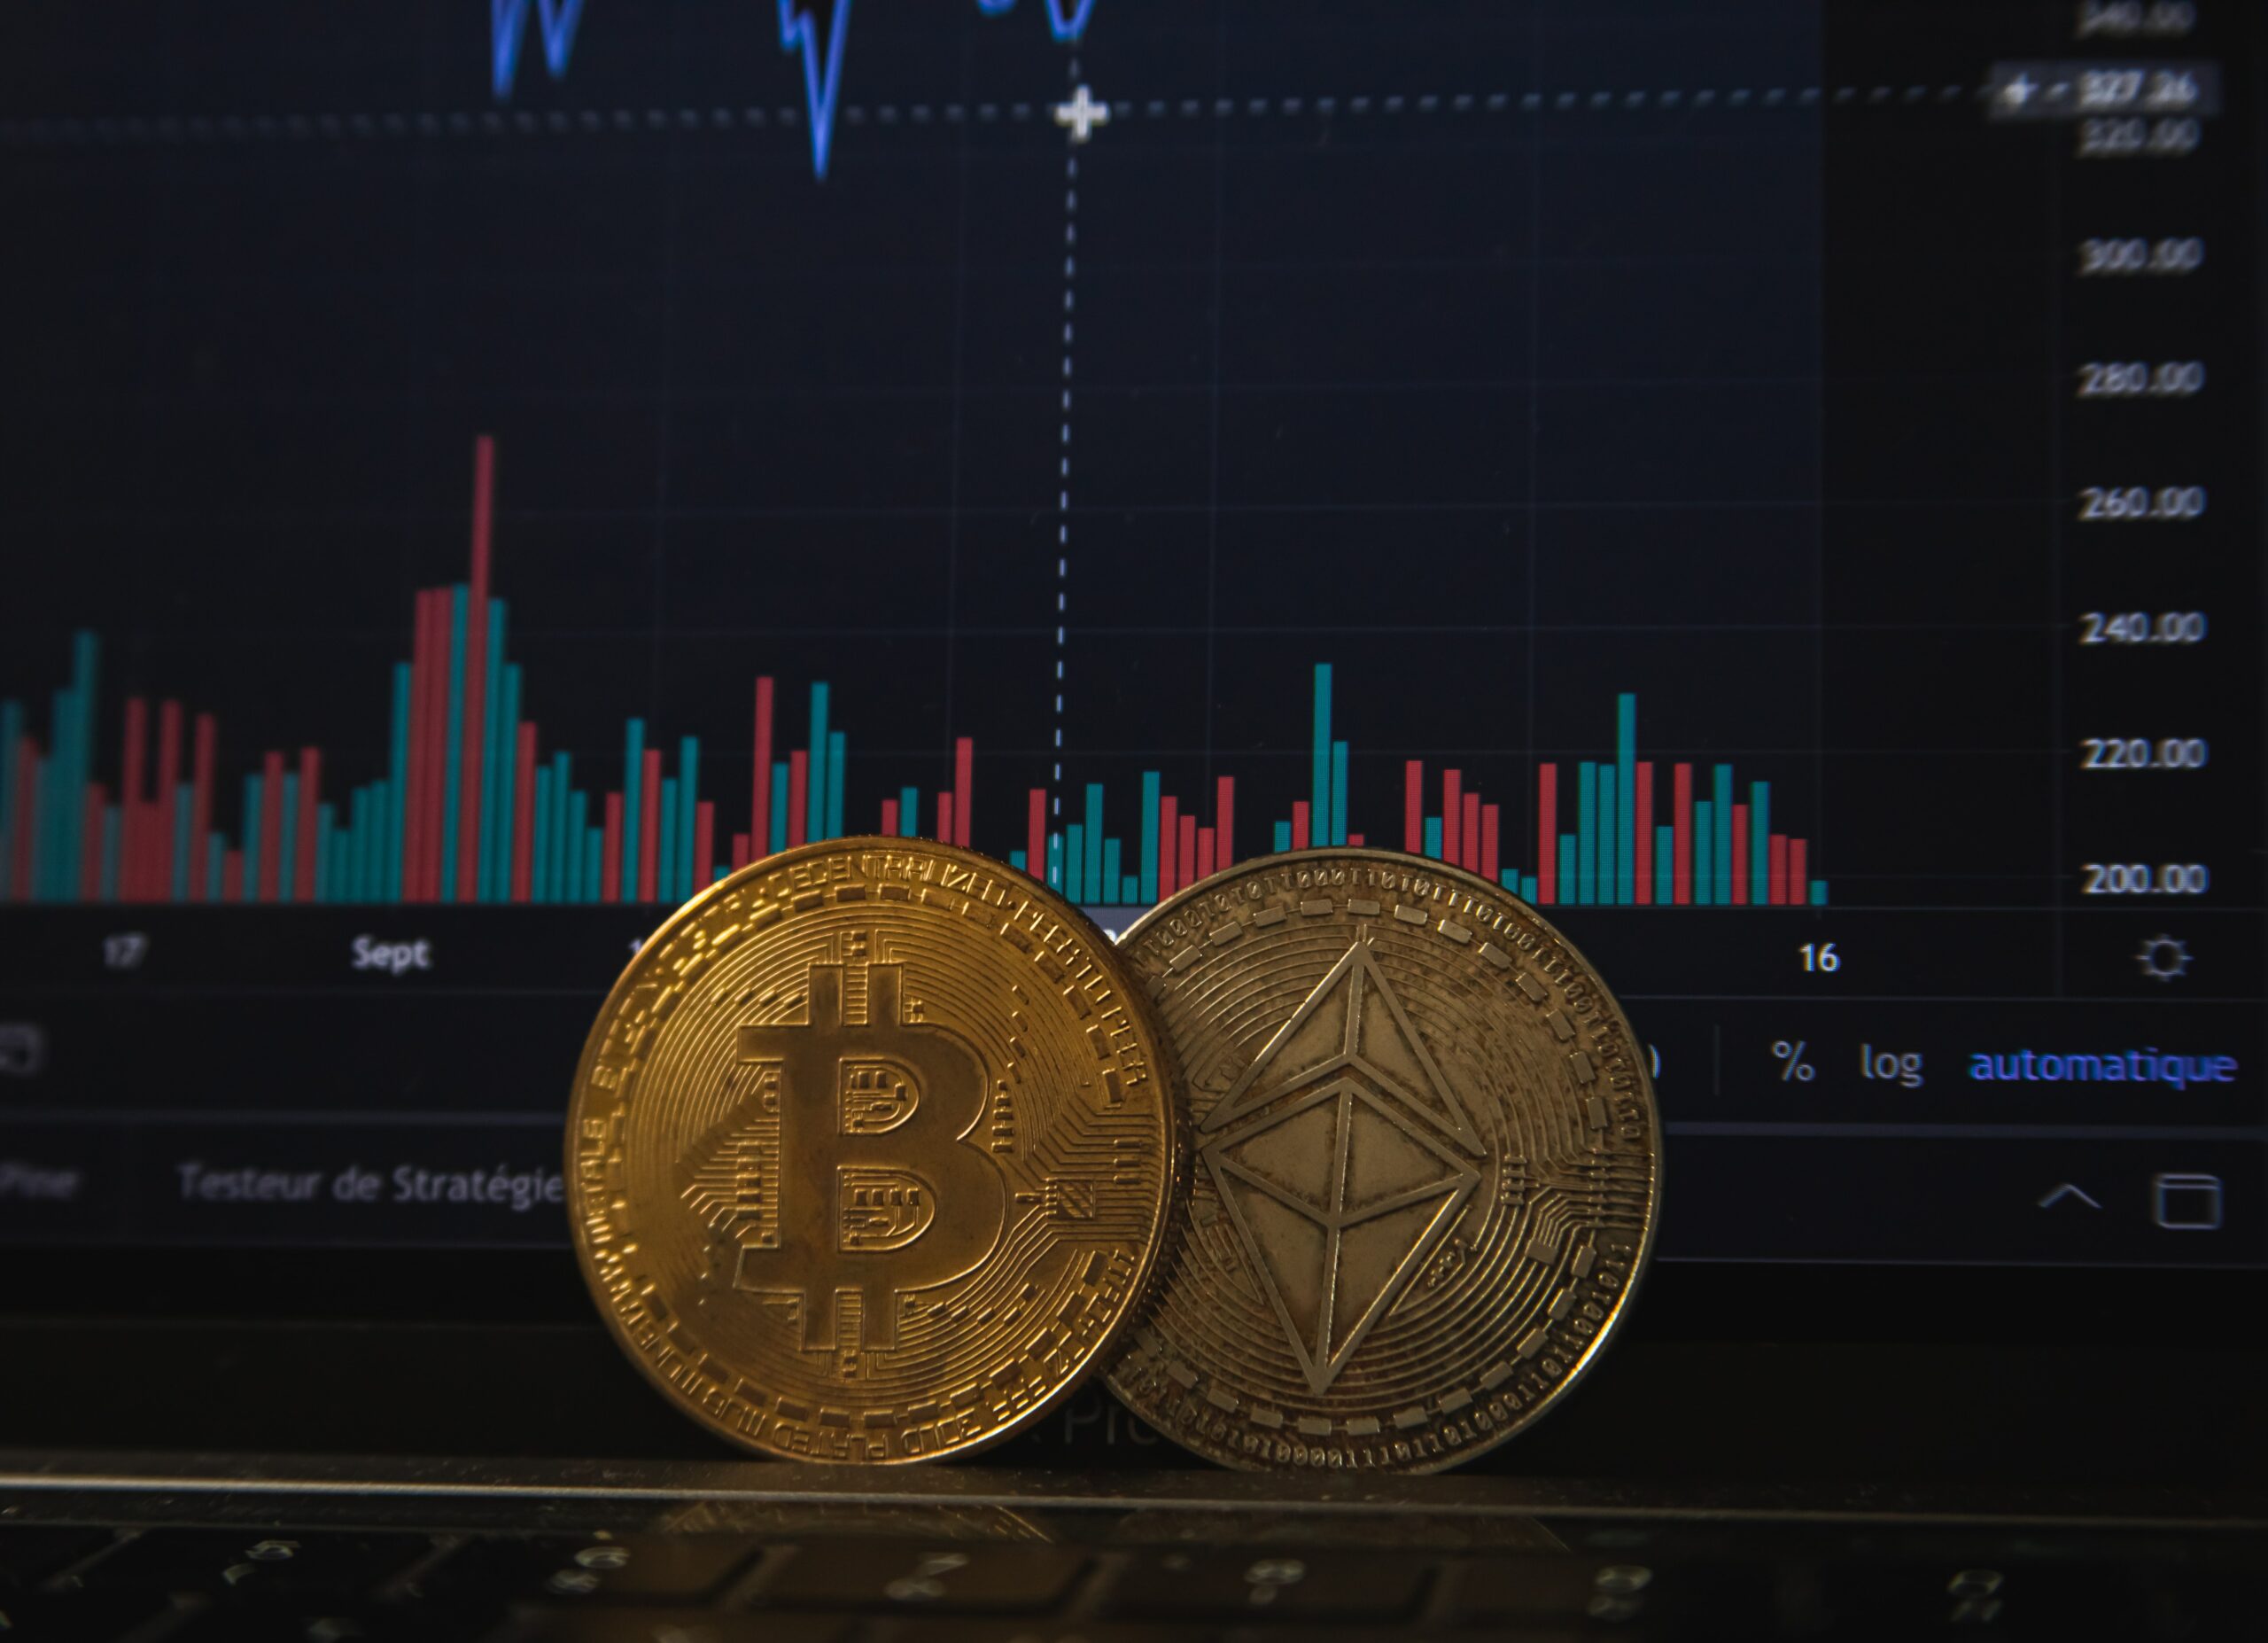 kryptowährungen mit größtem potenzial richtig in bitcoin investieren